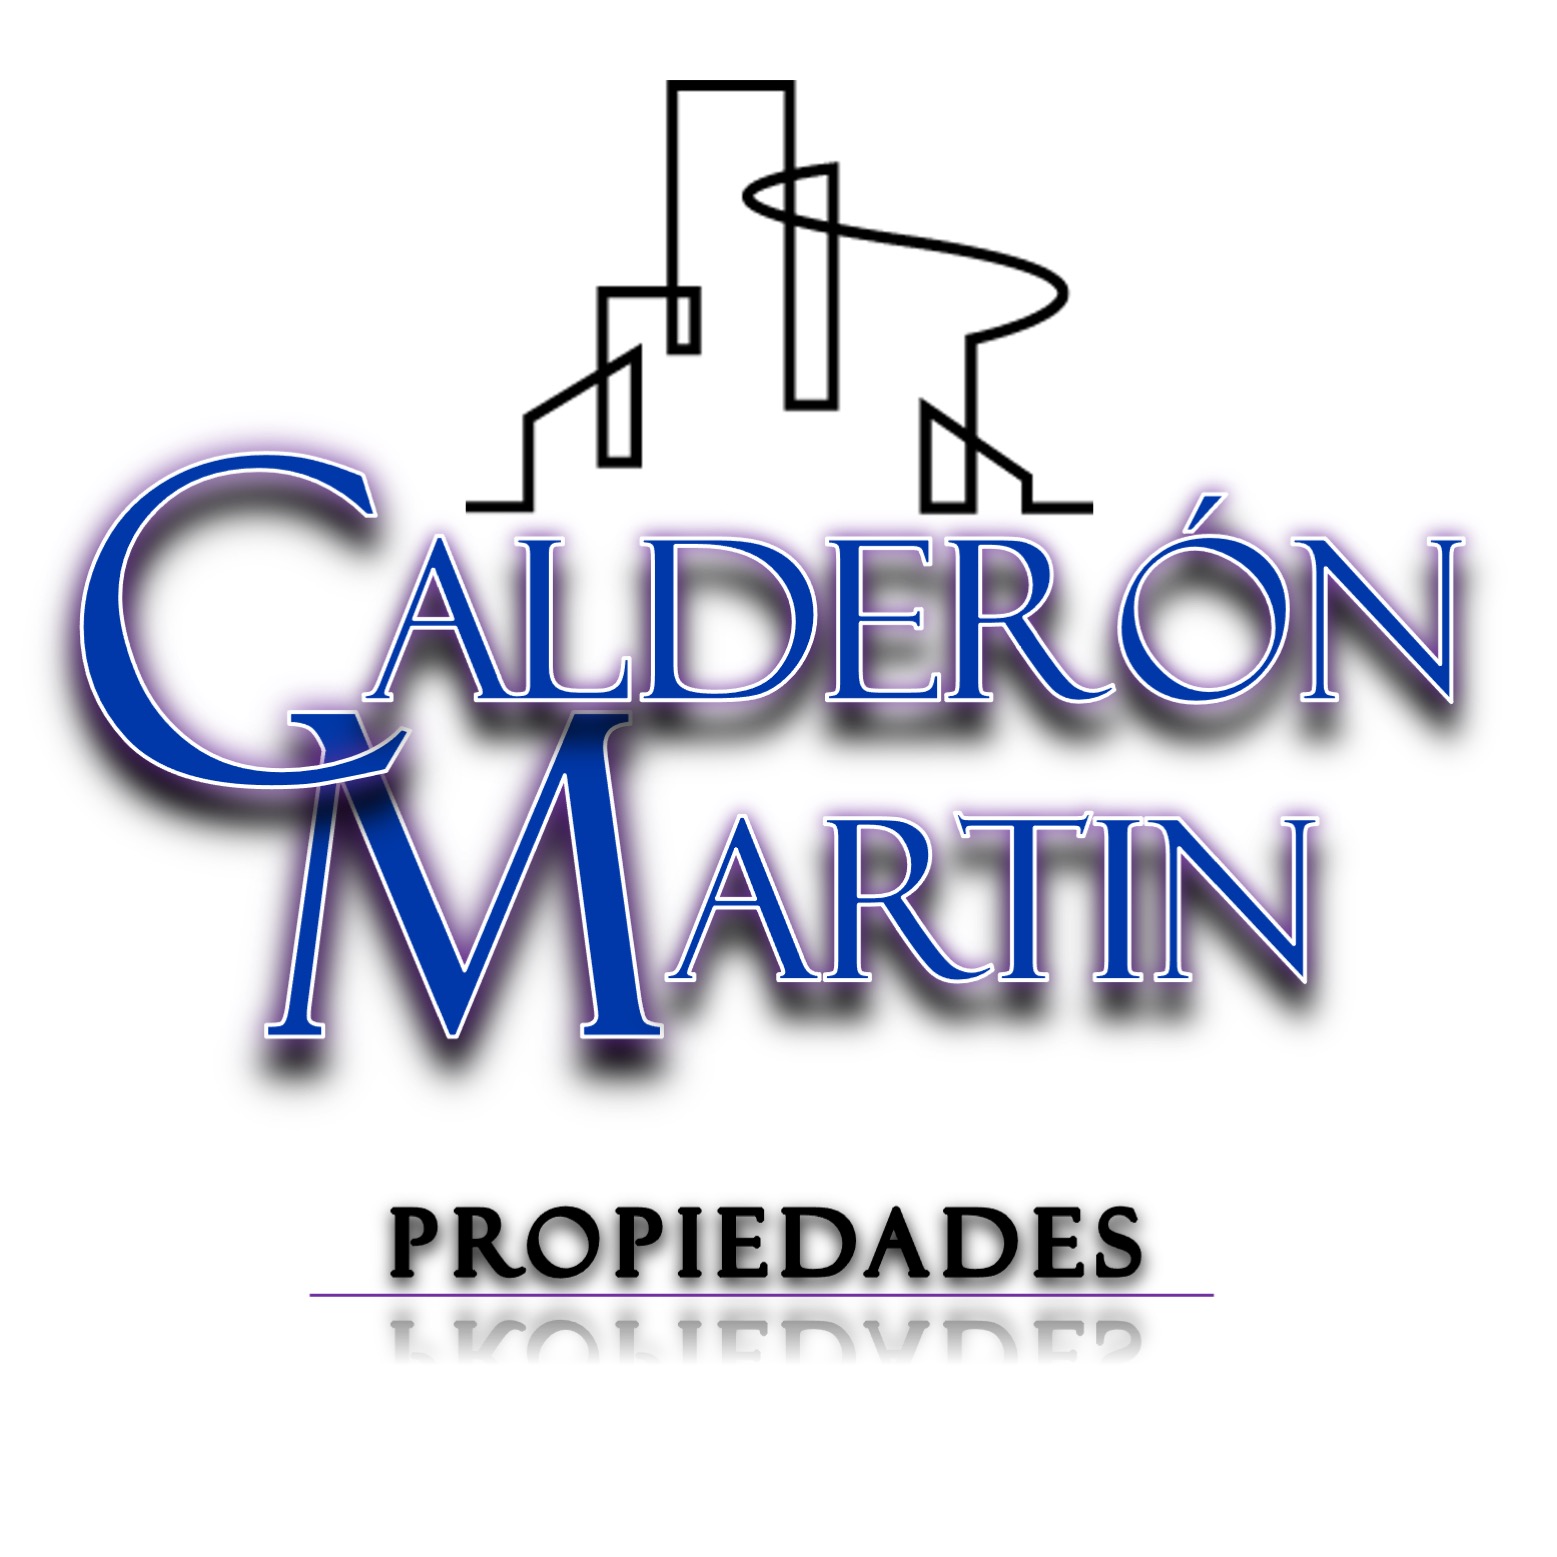 Calderón Martin Propiedades logo